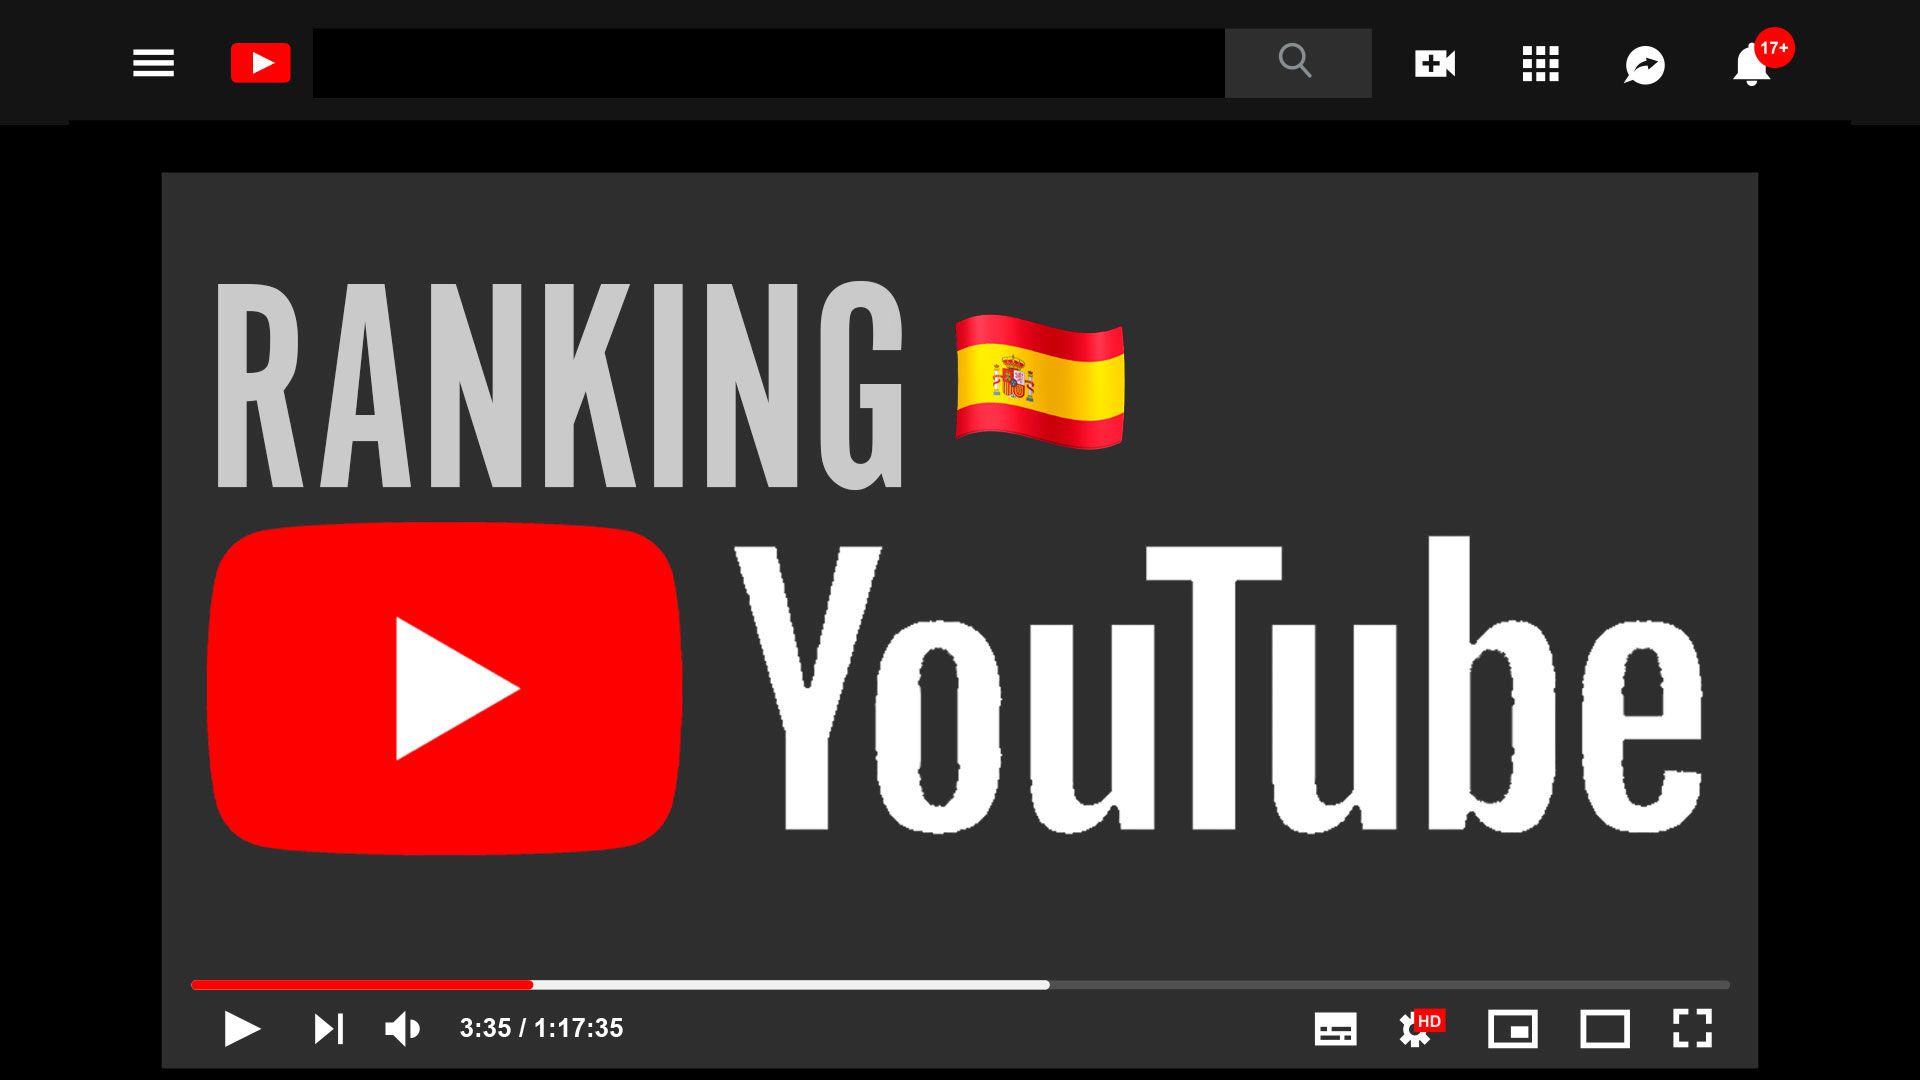 YouTube en España: estos son los videos que son populares hoy - Infobae